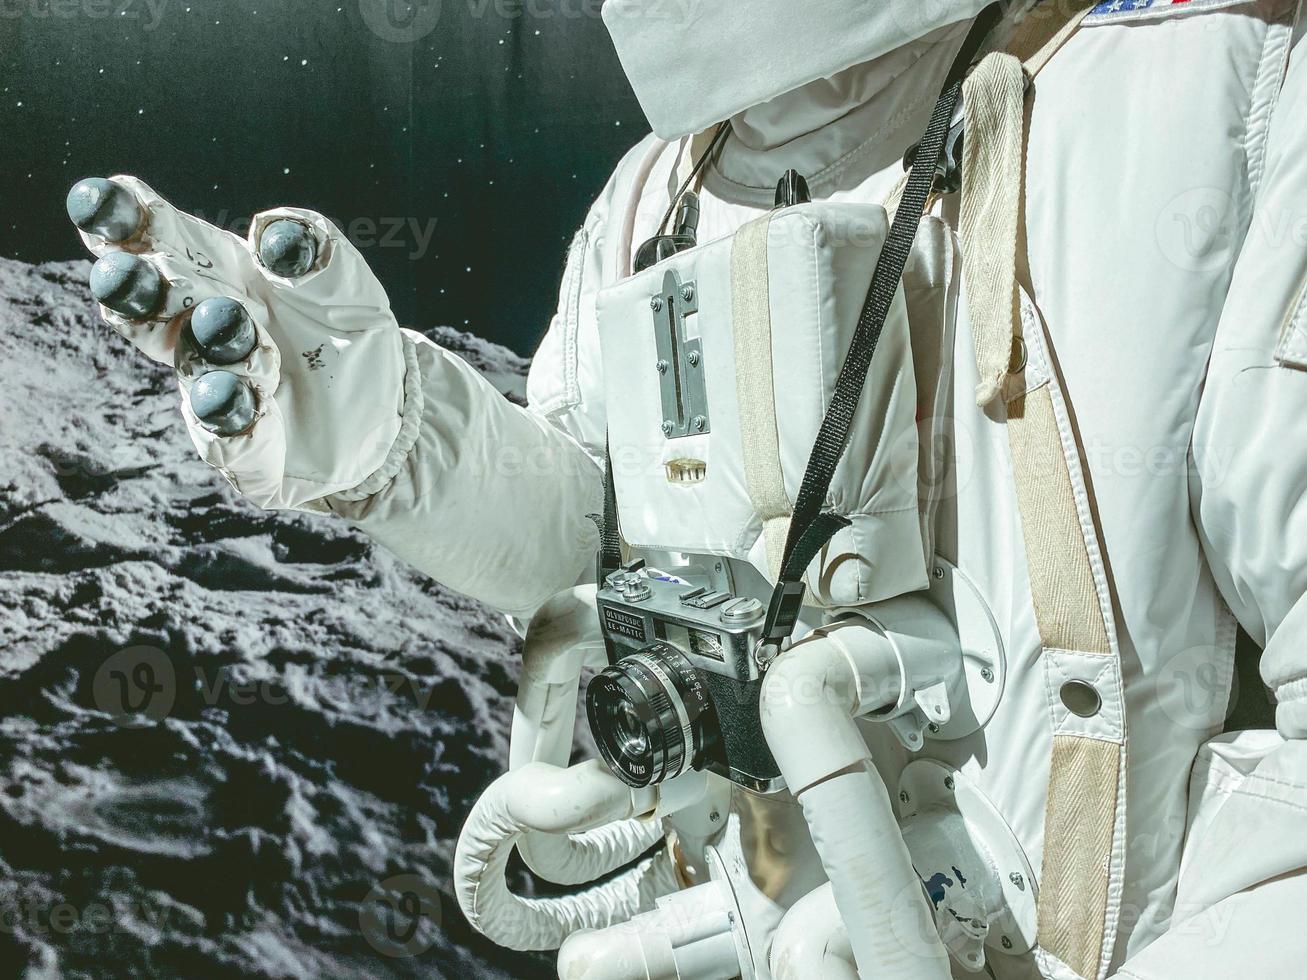 terno branco com astronauta de traje espacial no espaço. ele tem uma câmera pendurada no pescoço. no terno de um tubo para garantir a respiração do astronauta foto